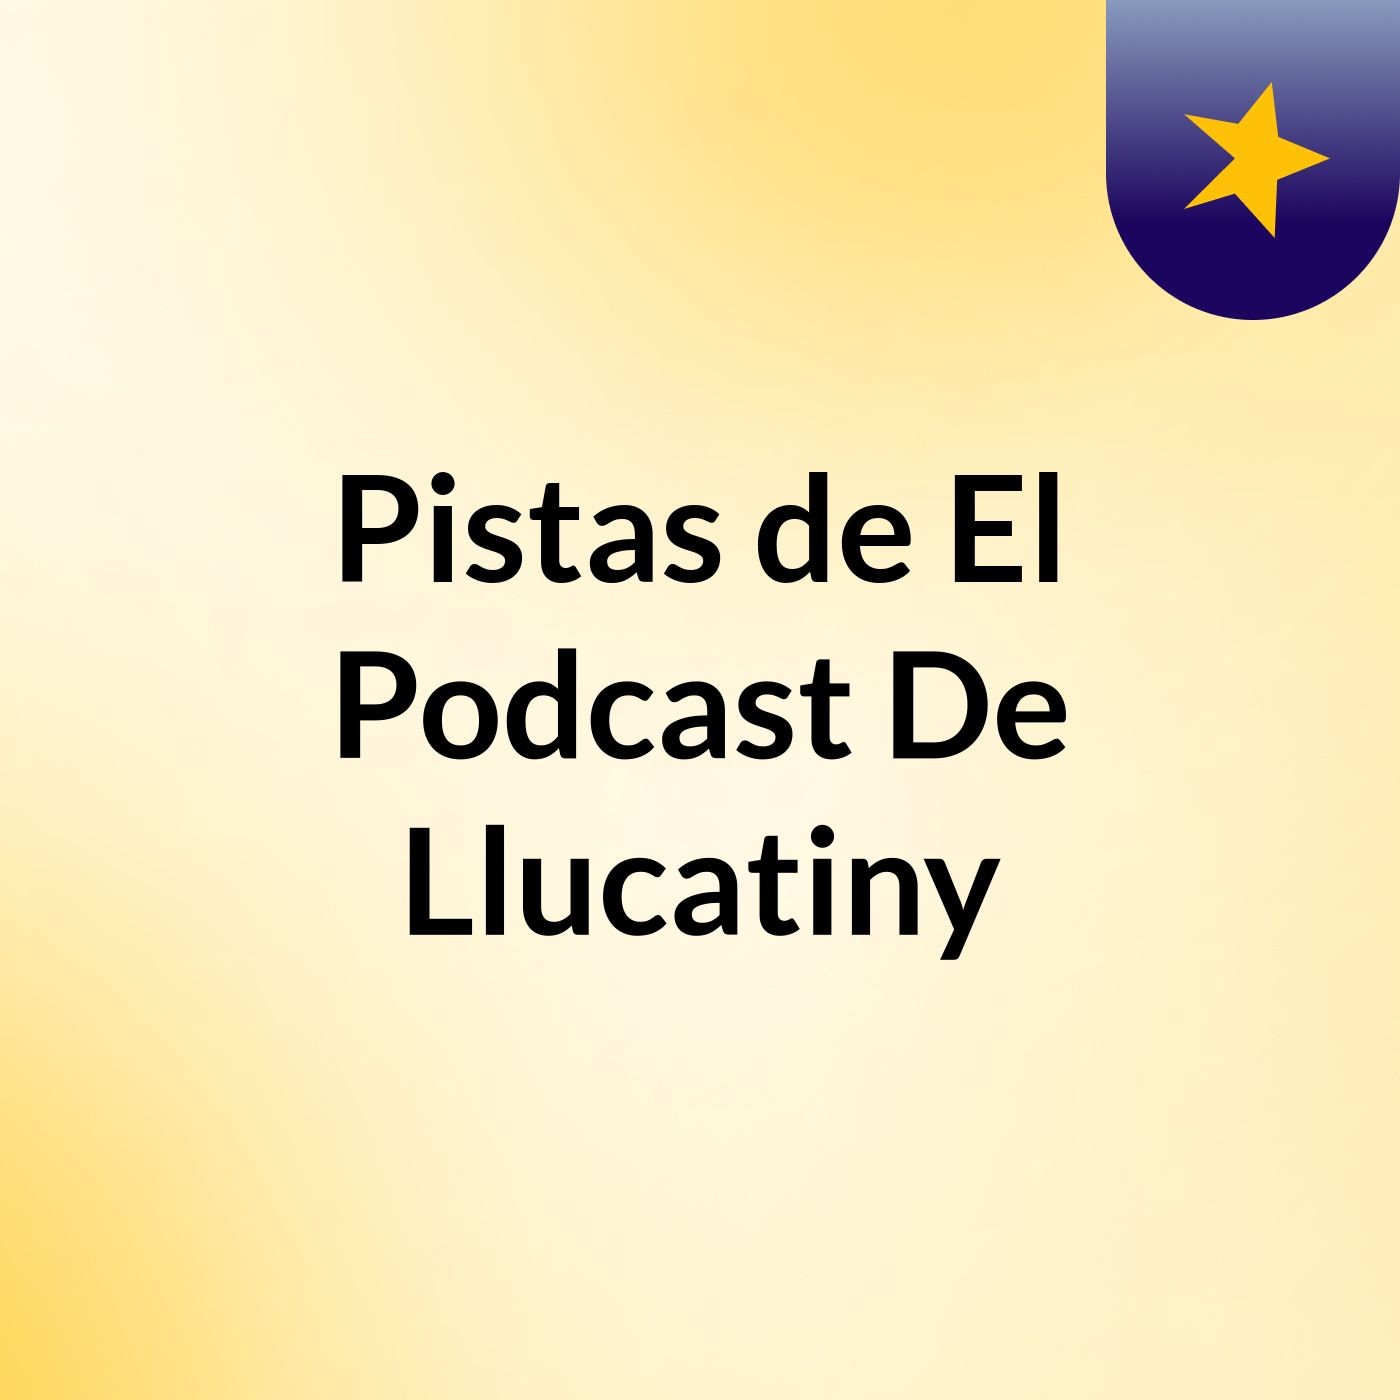 Pistas de El Podcast De Llucatiny